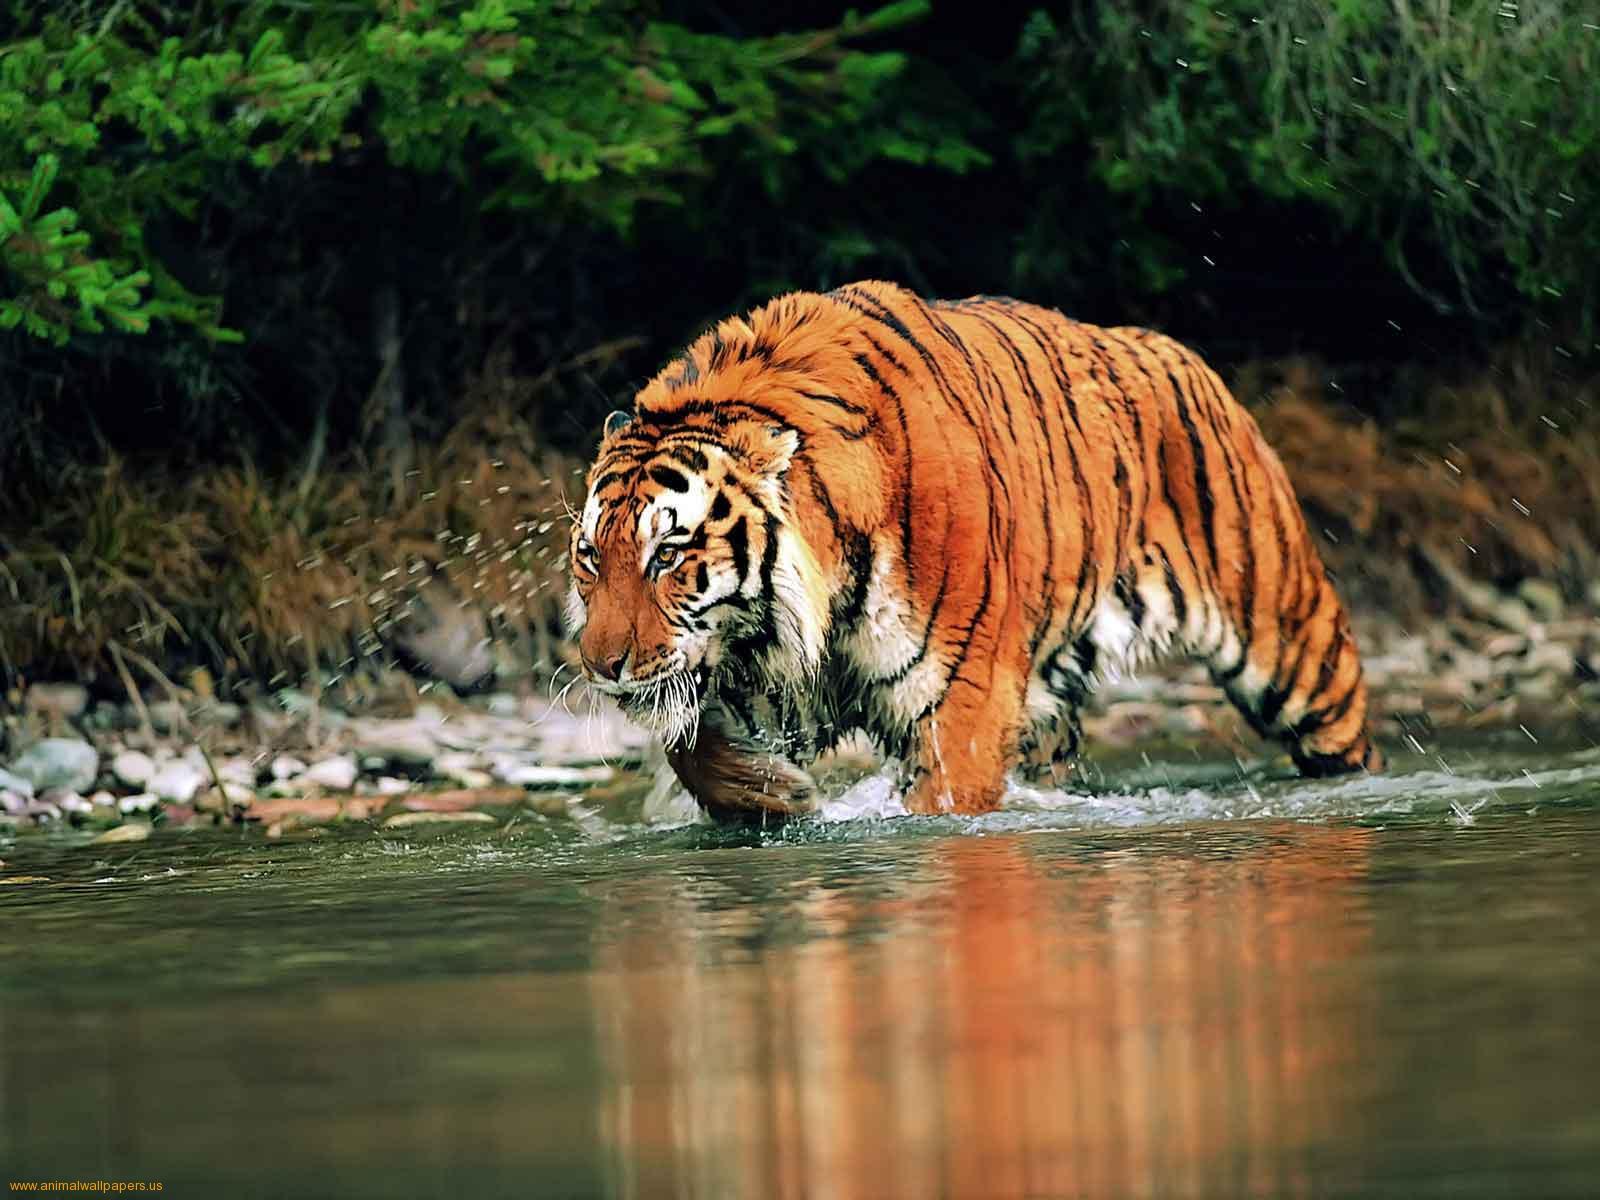 बंगाल टाइगर - पश्चिम बंगाल के बंगाल टाइगर दुनिया के हर देश में प्रसिद्ध हैं इन्हें देखने के लिए दुनियाभर के लोग भारत आते हैं। भारत में इन टाइगर की प्रजाती को बचाने के लिए भरपूर प्रयास किए जा रहे हैं।